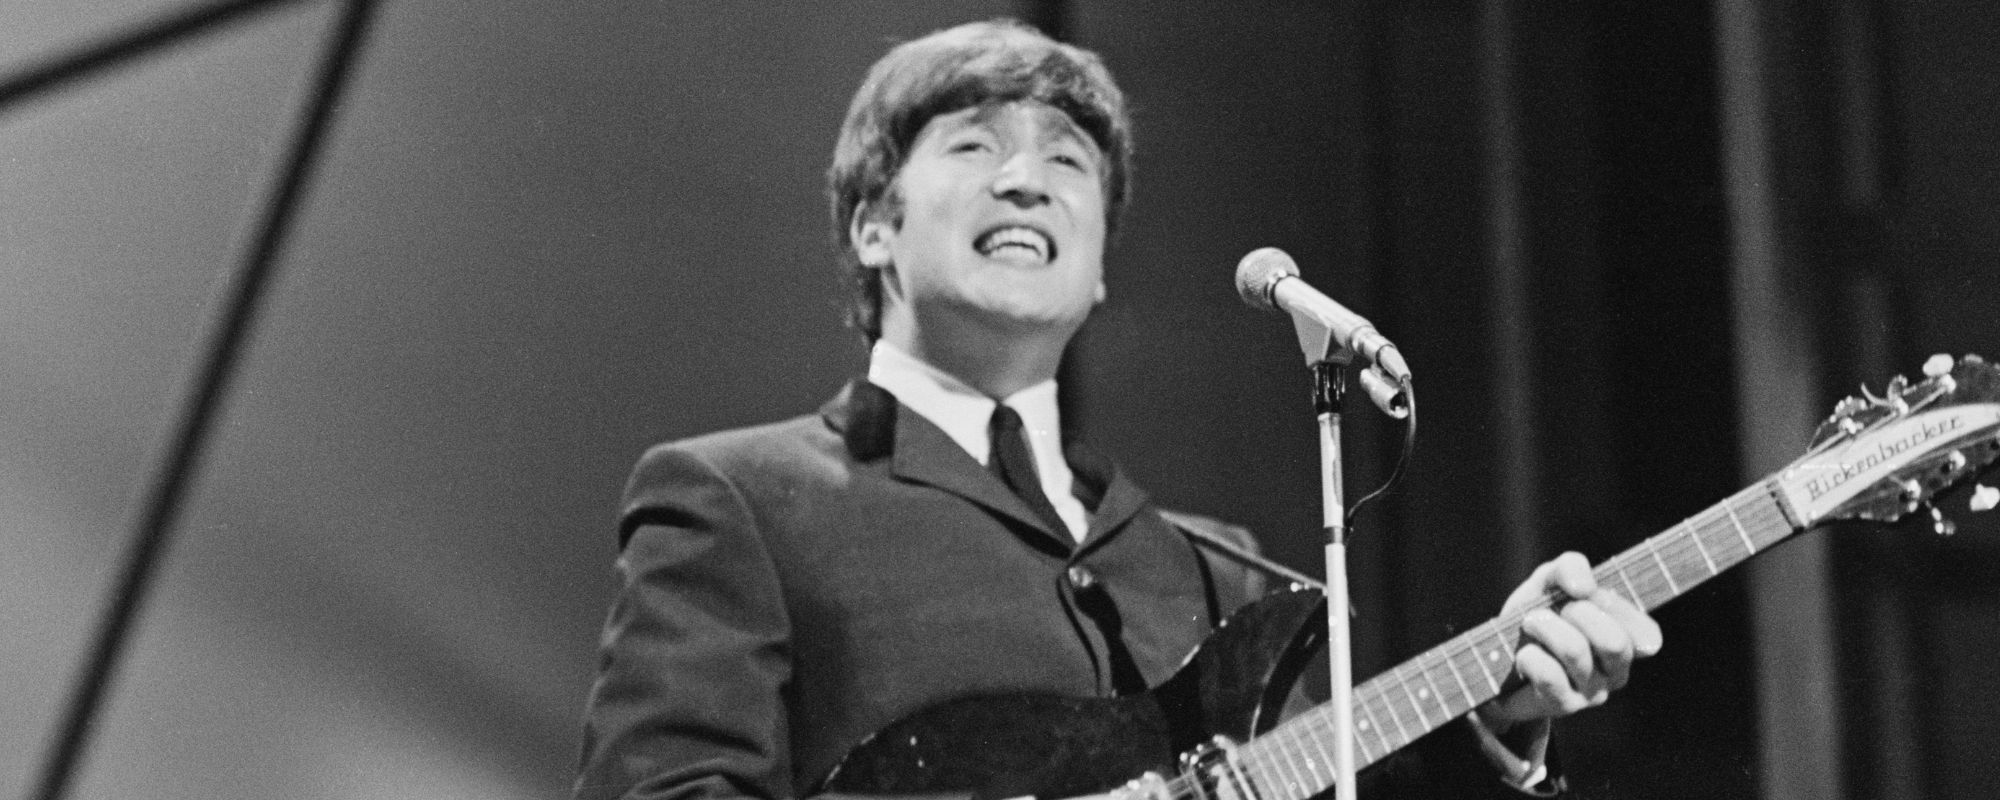 John Lennon singing, playing guitar